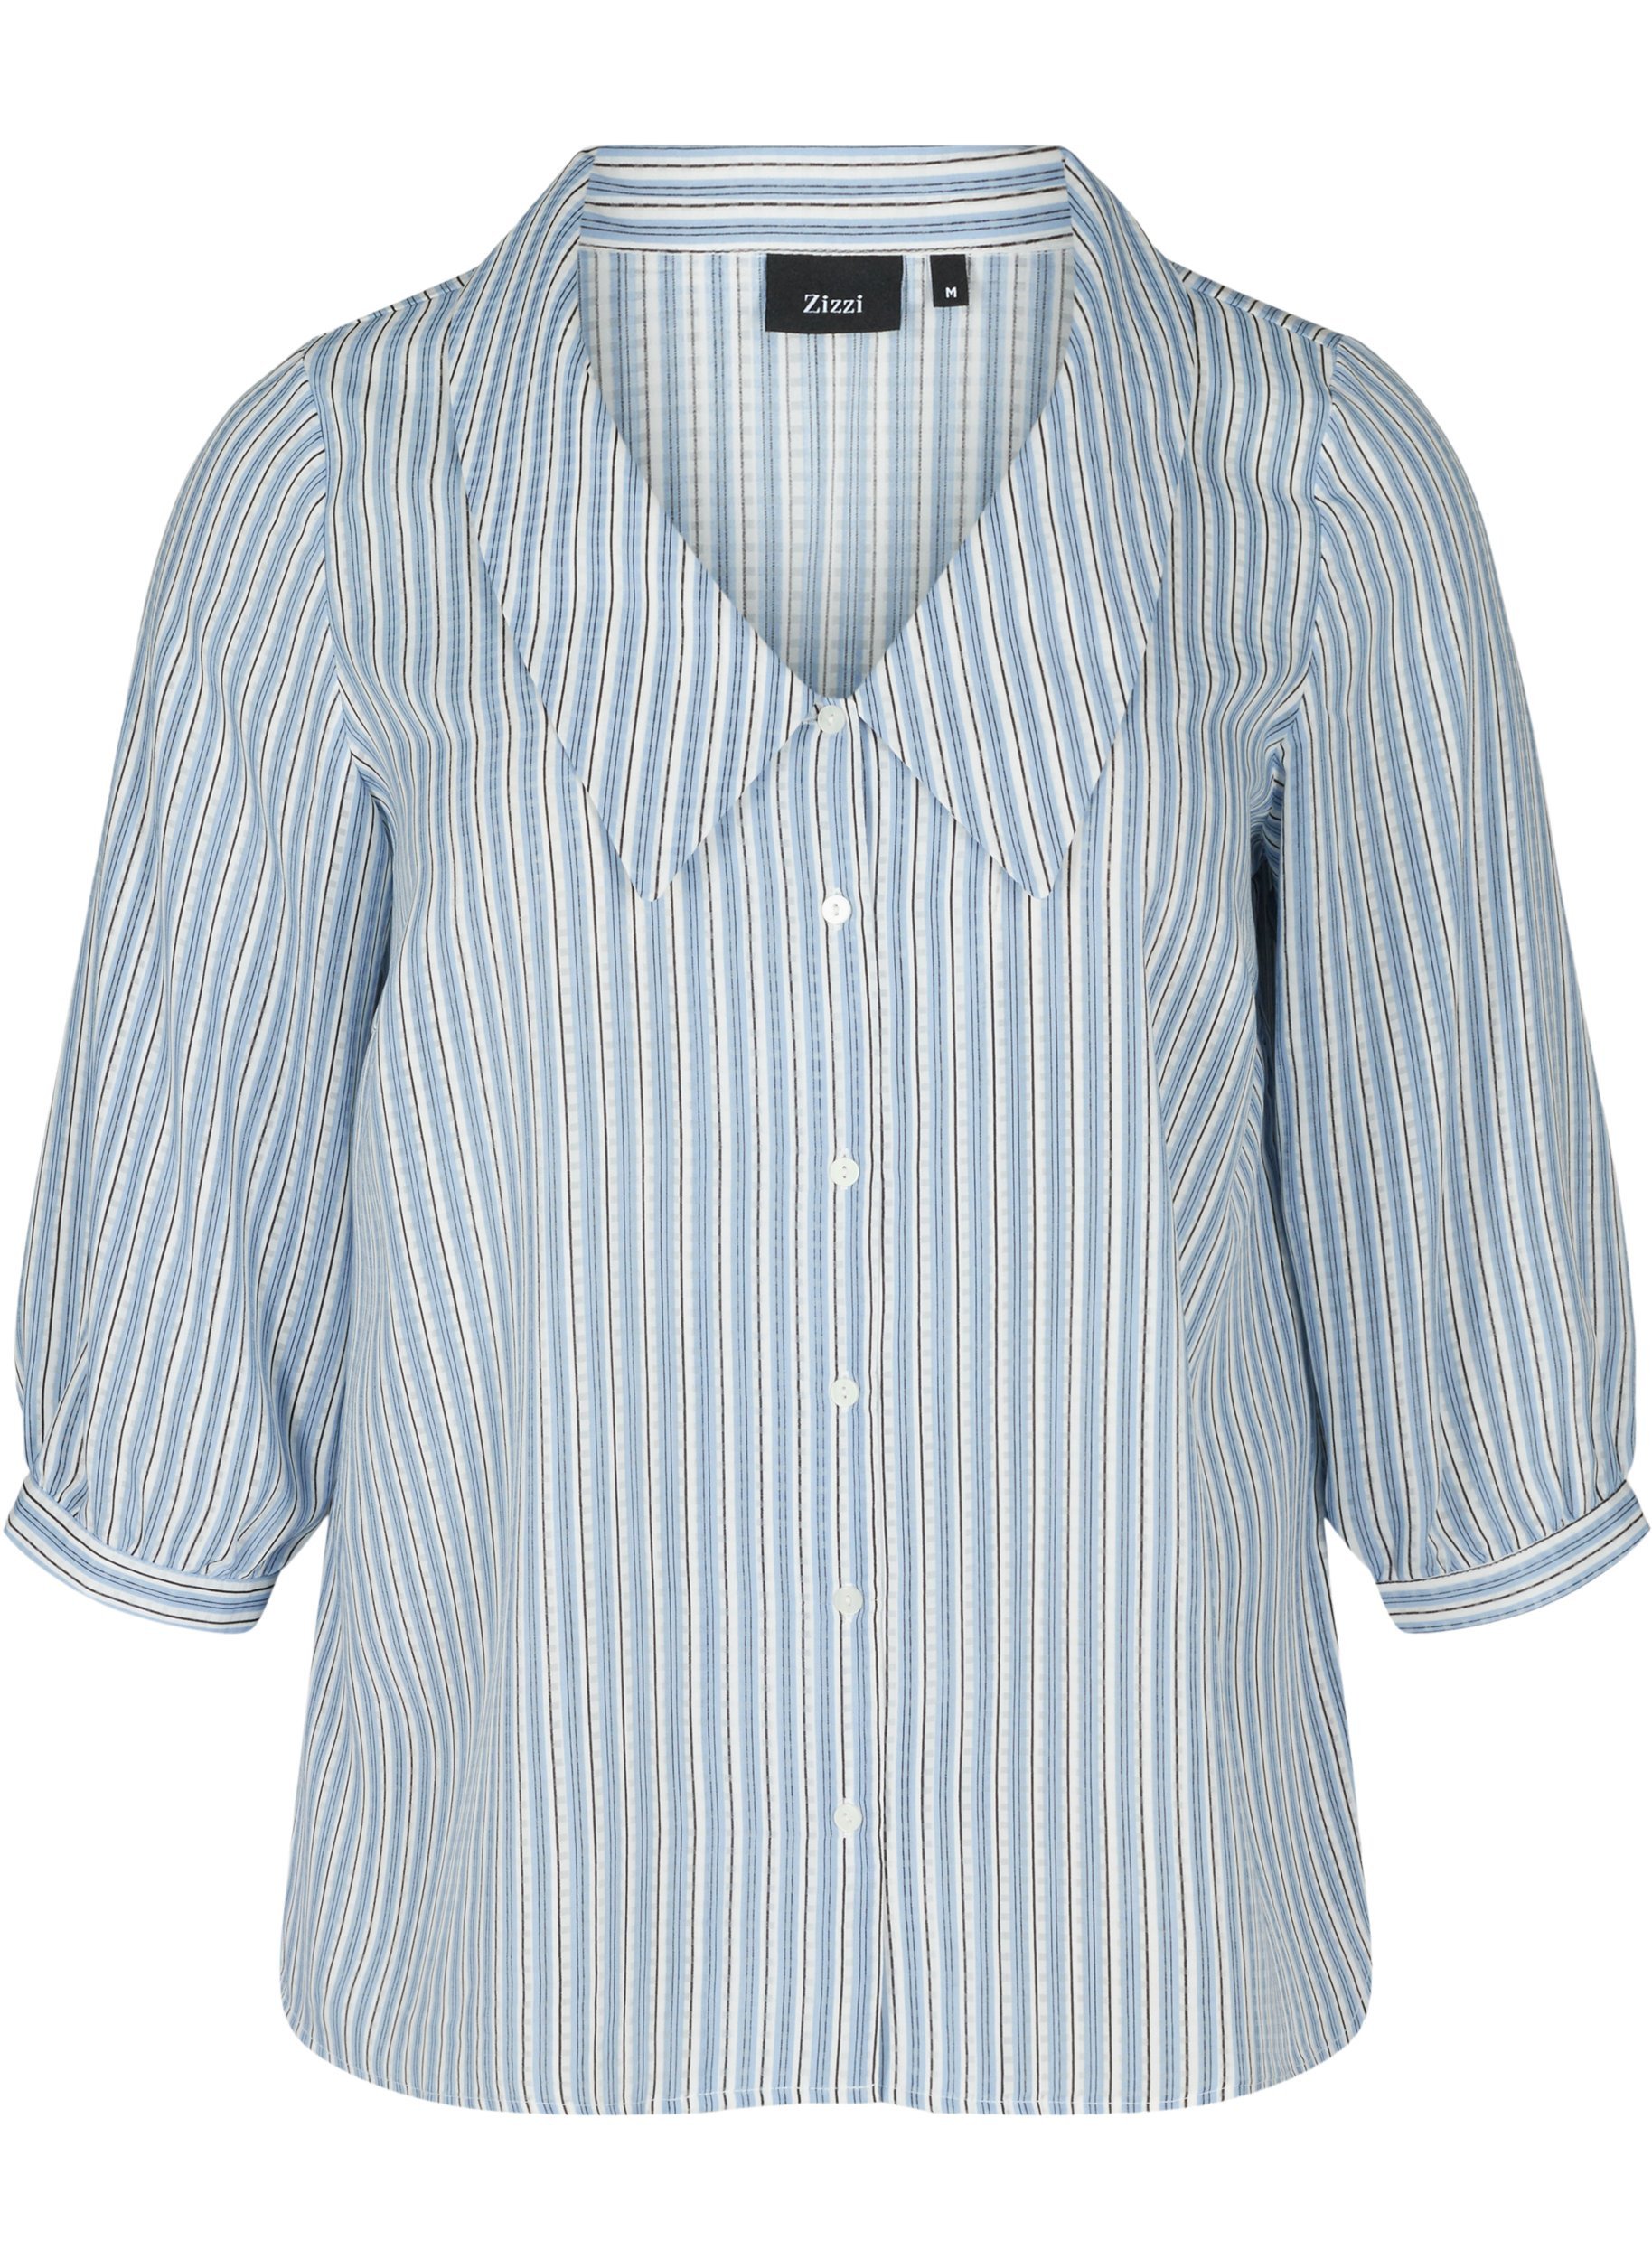 Randig skjortblus med stor krage, Light Blue Stripe